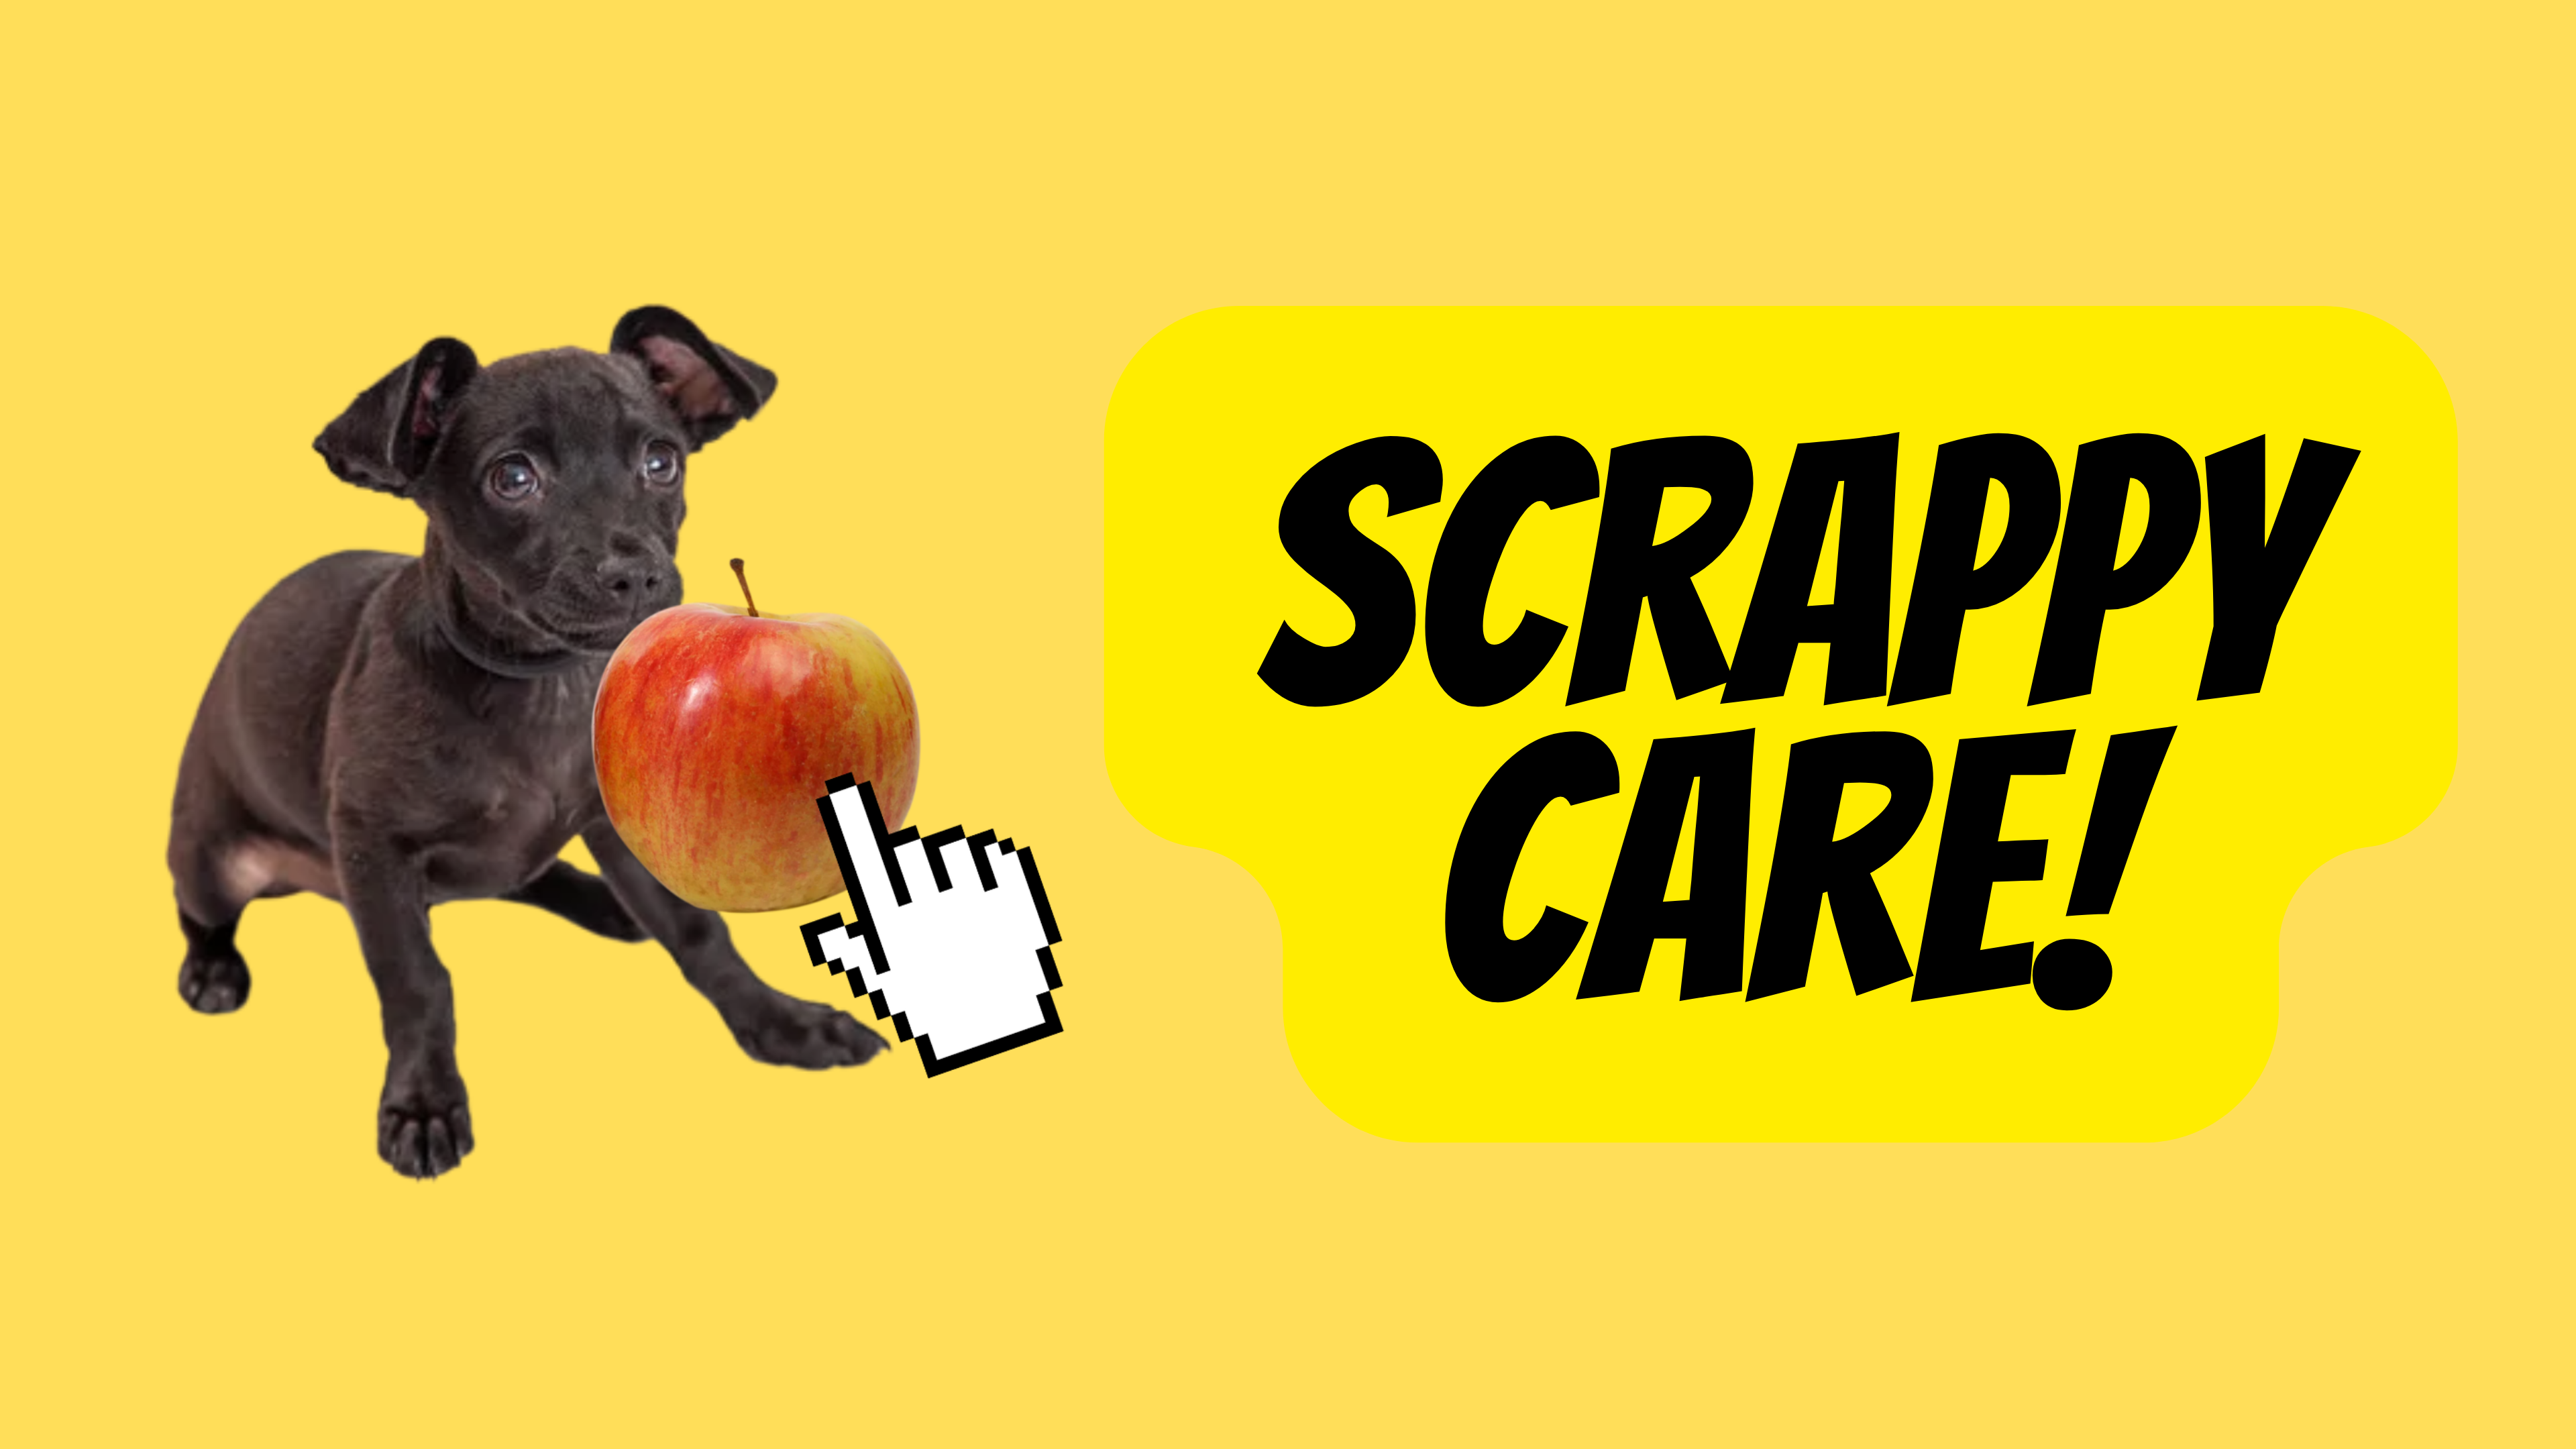 Scrappy Care